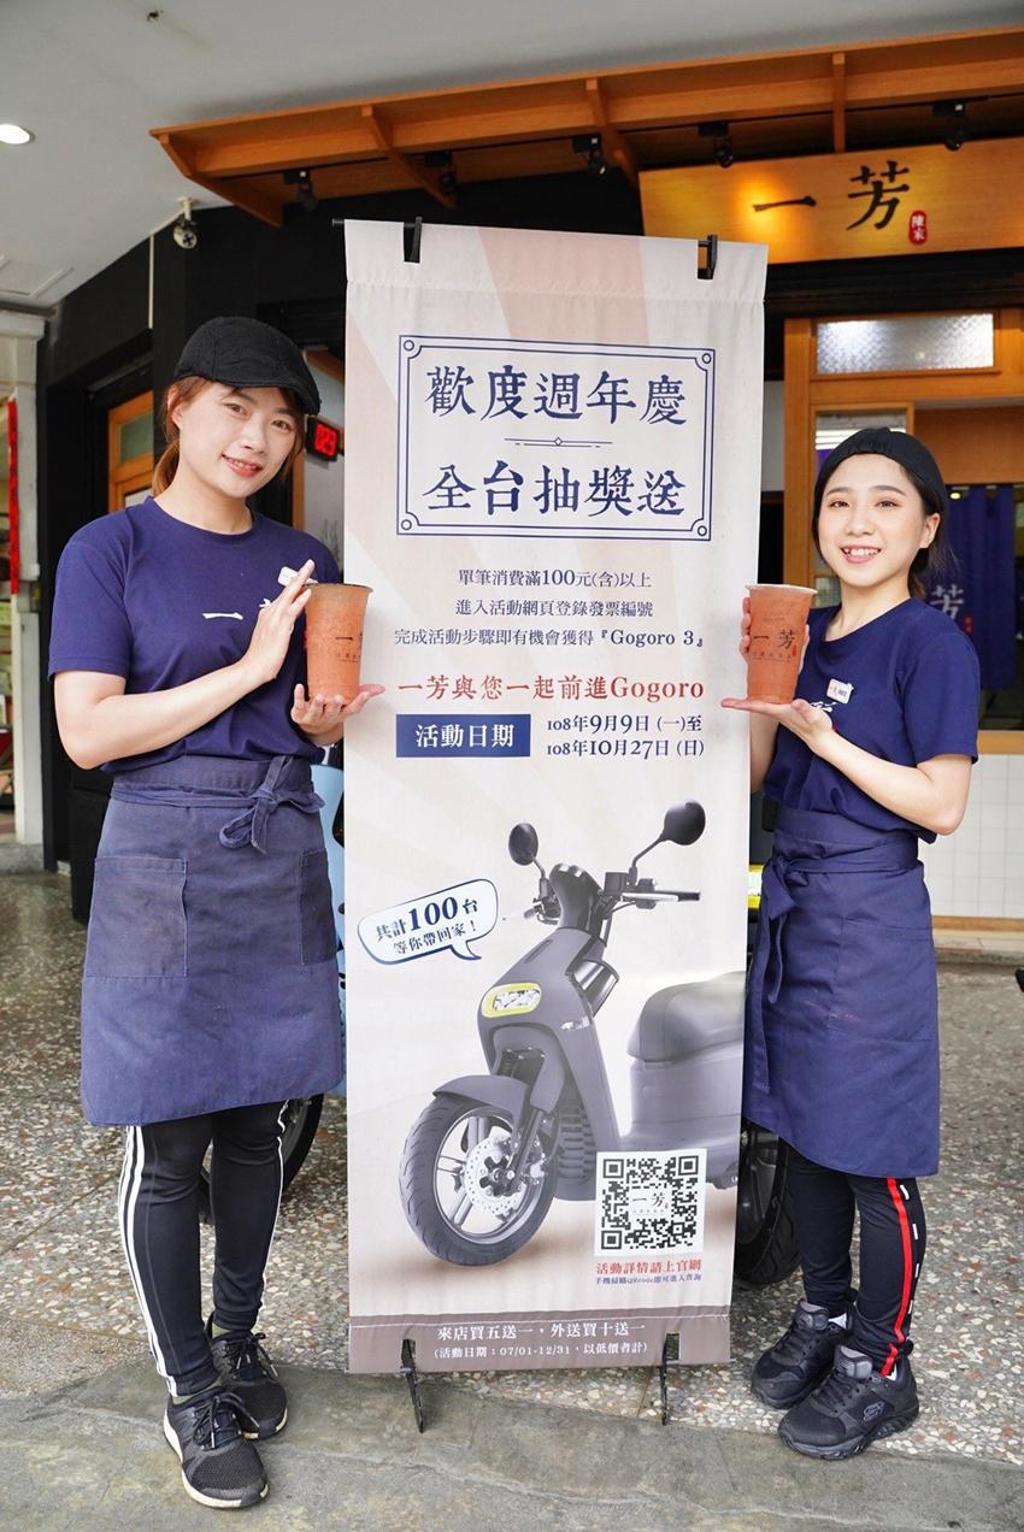 墨力國際台灣總經理廖麗霞表示，一芳水果茶9/9起連續7週將抽出100台電動機車。圖/曾麗芳